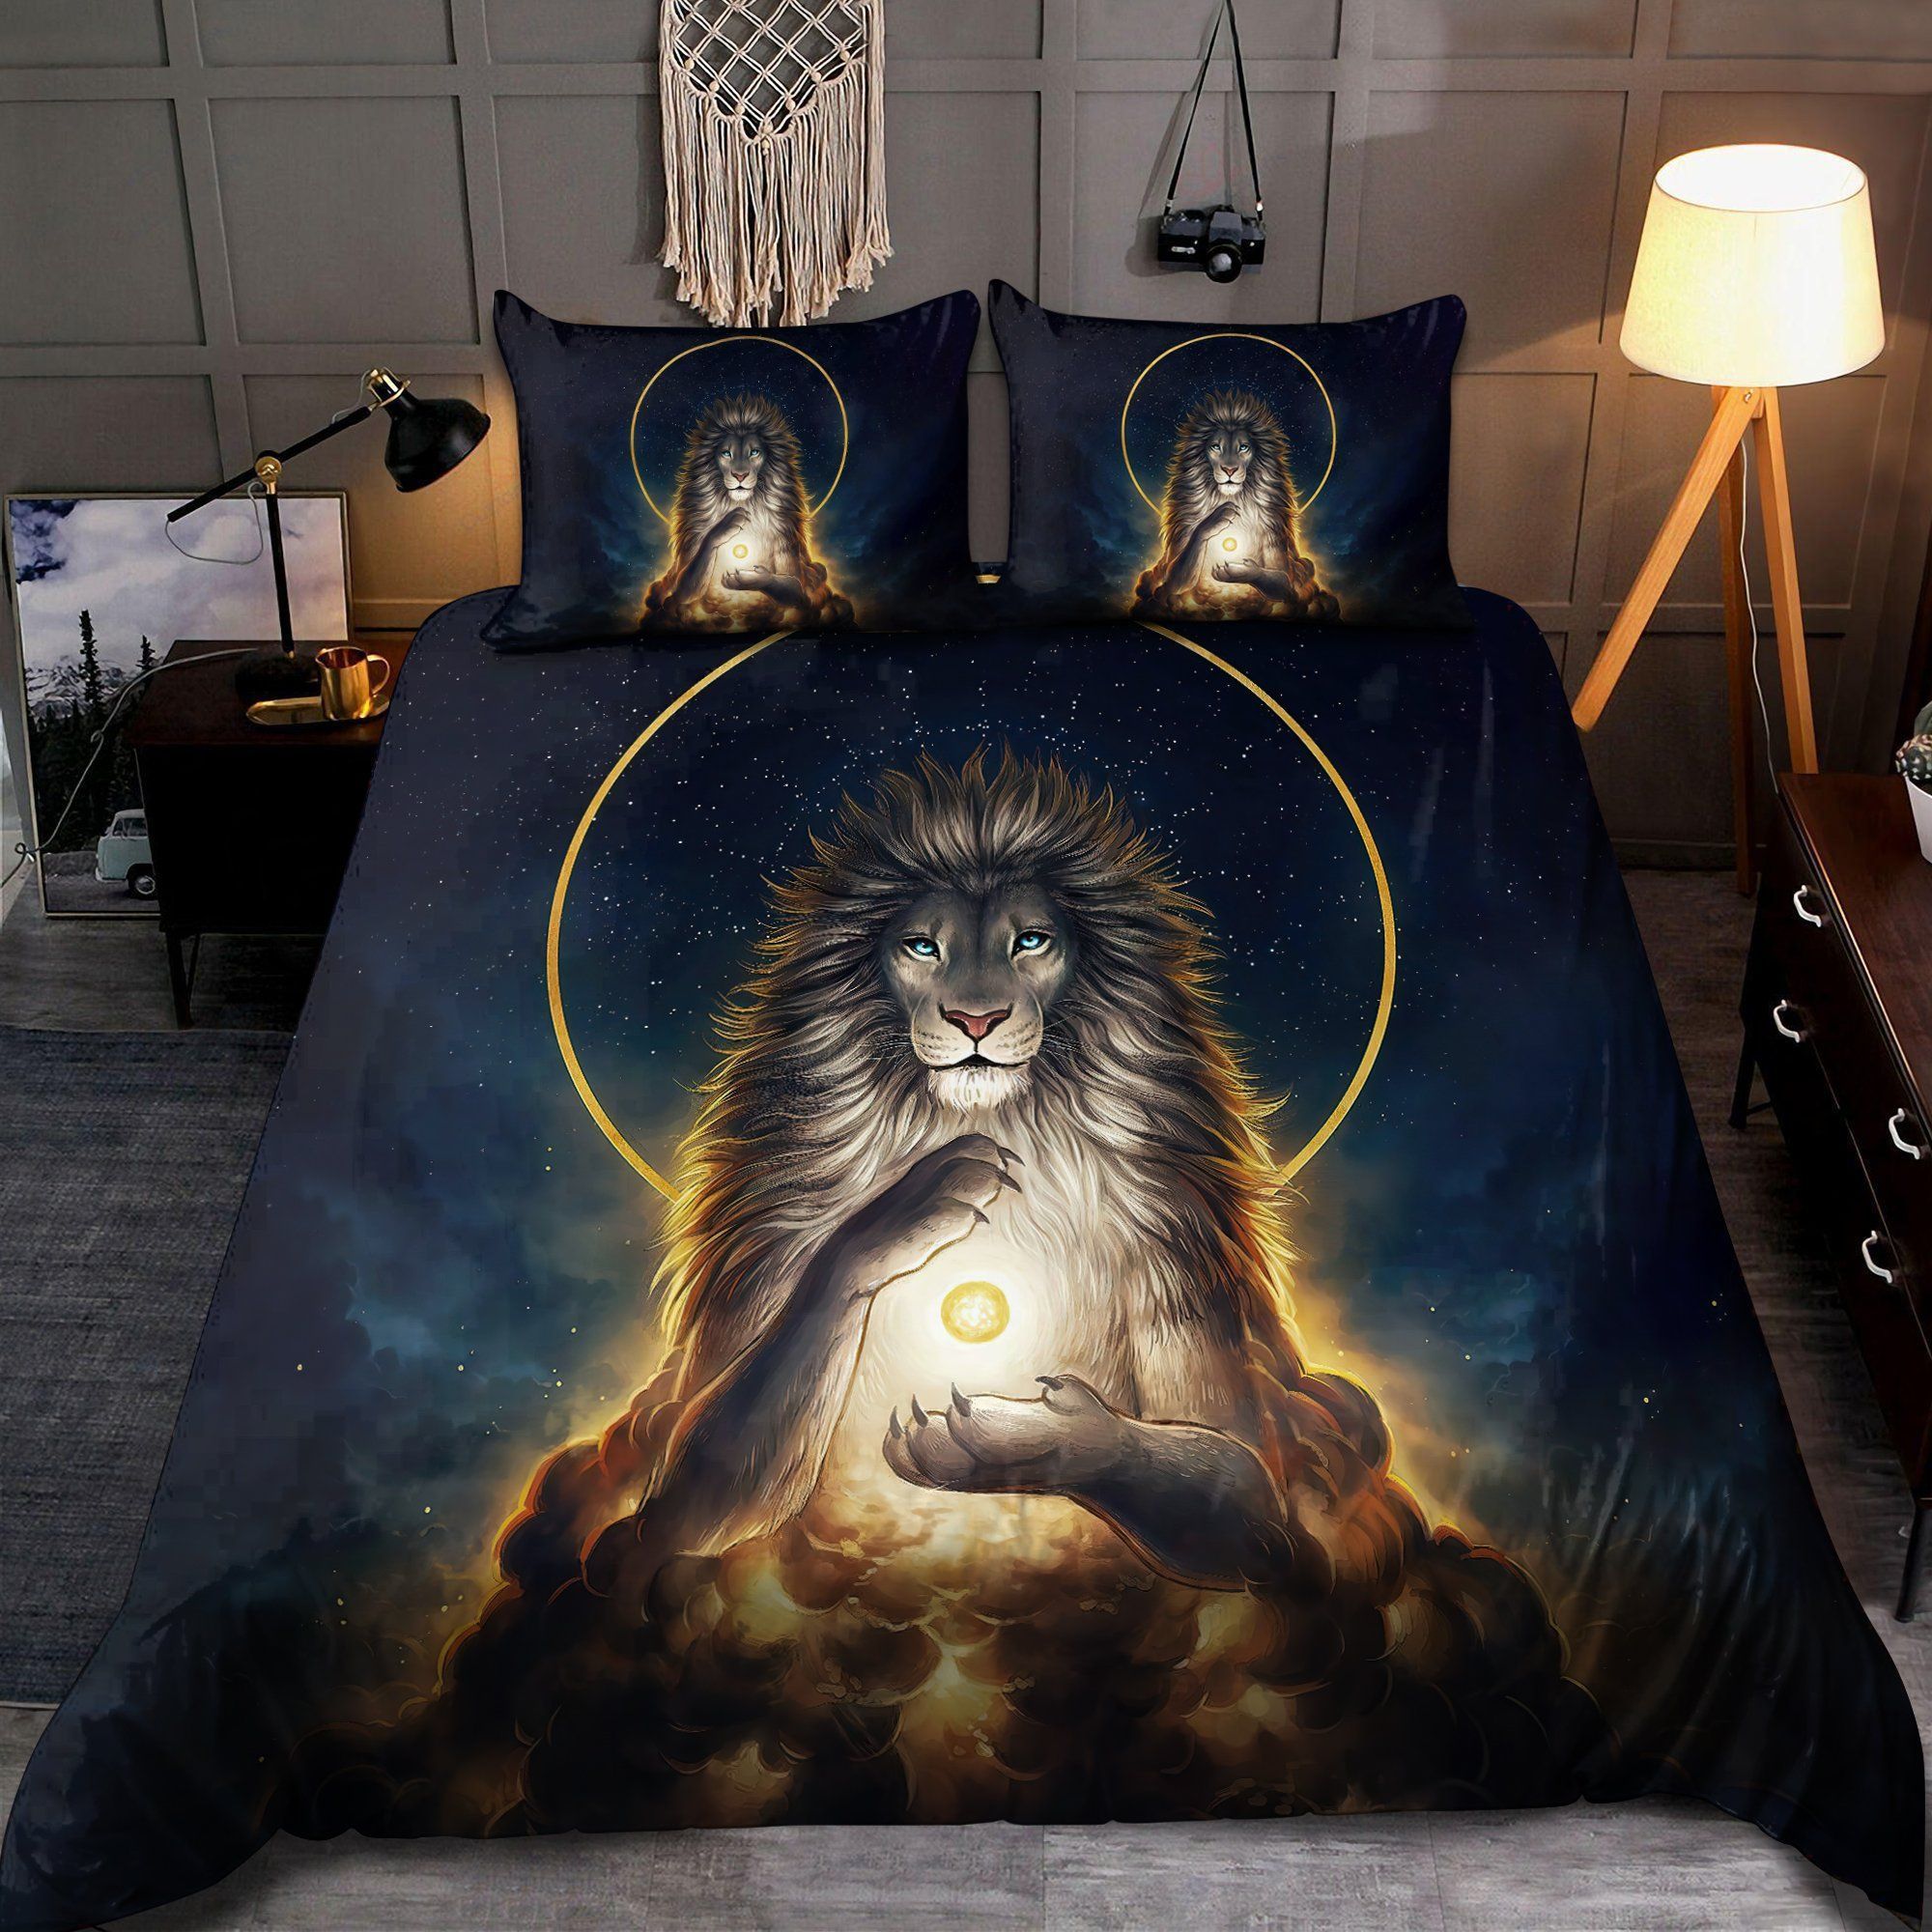 Magical Lion God Bedding Set Bed Sheets Spread Comforter Duvet Cover Bedding Sets